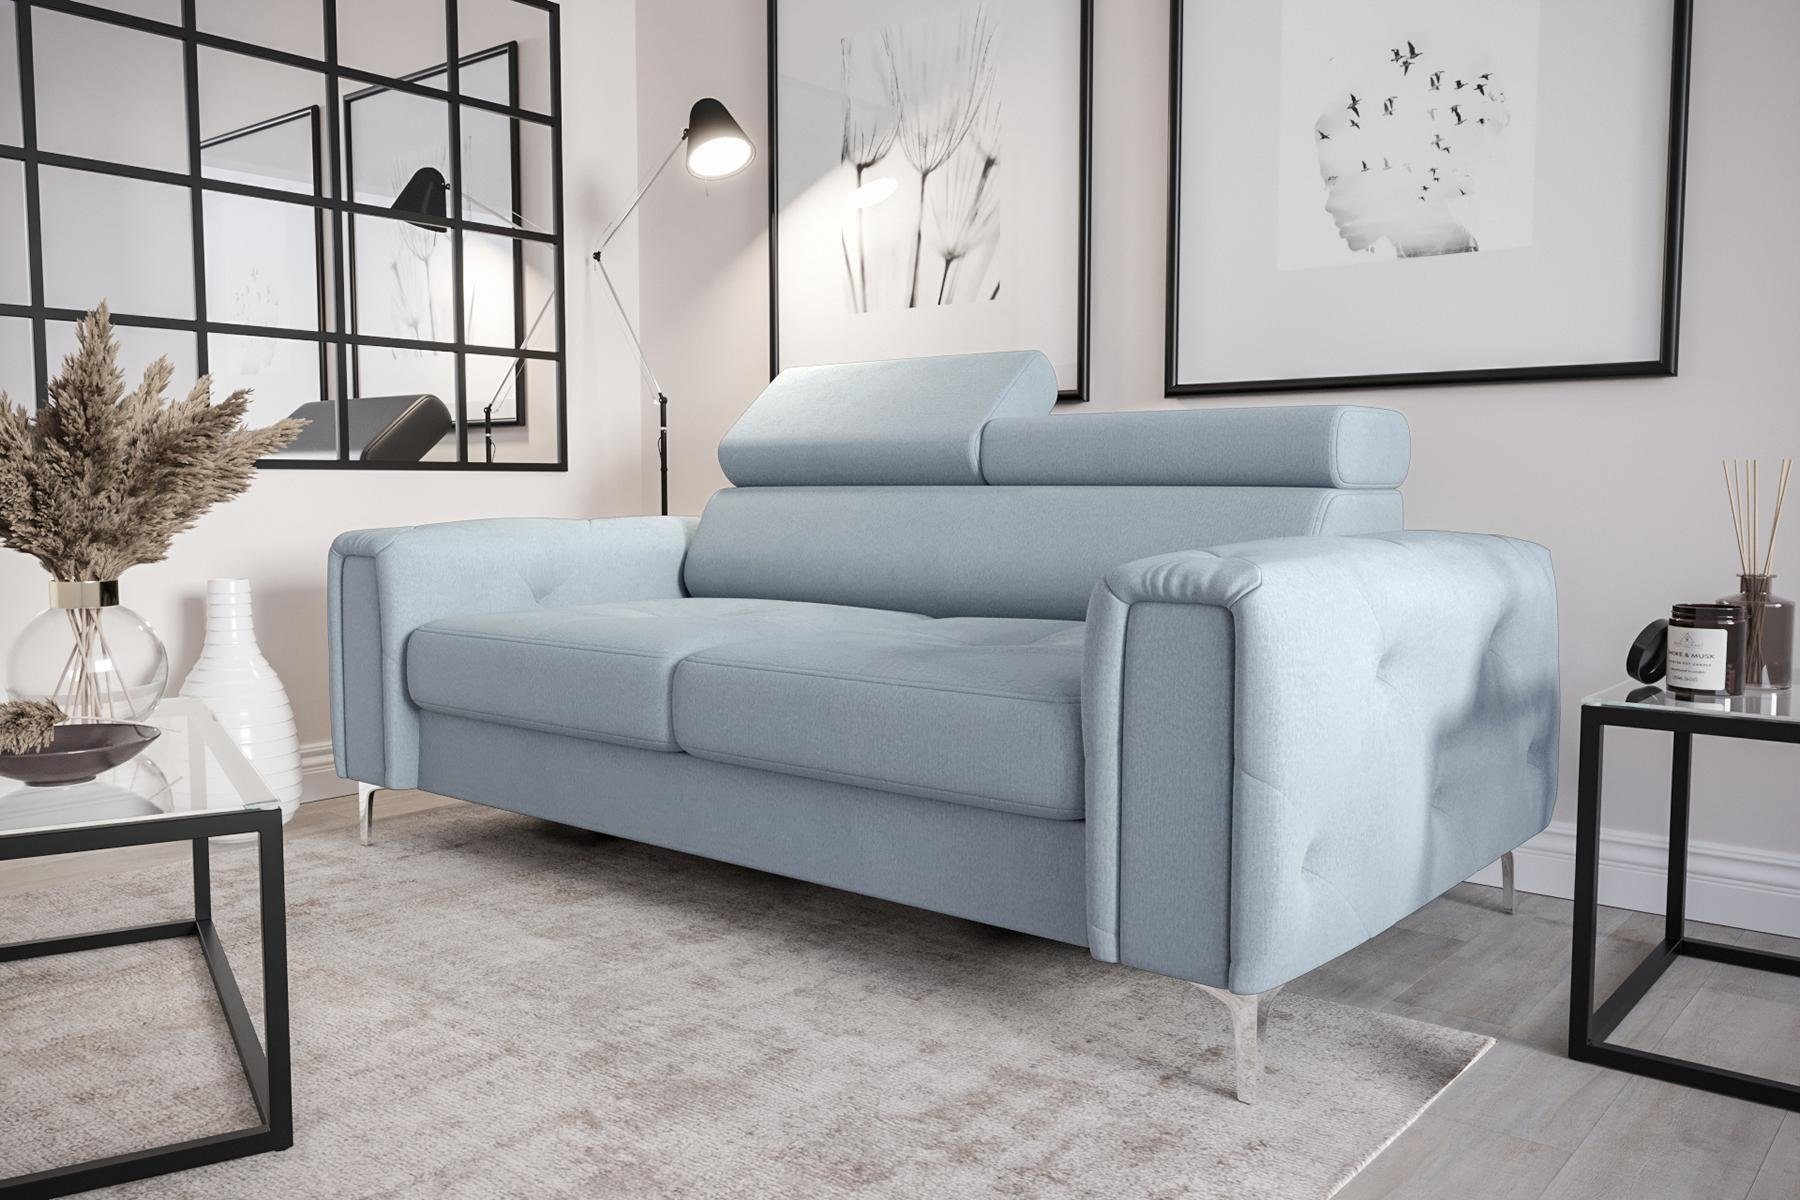 JVmoebel Sofa Designer 2-Sitzer Sofa Couchen Luxus Polster Möbel Sofa Couch Sitz, Made in Europe Blau | Blau | Blau